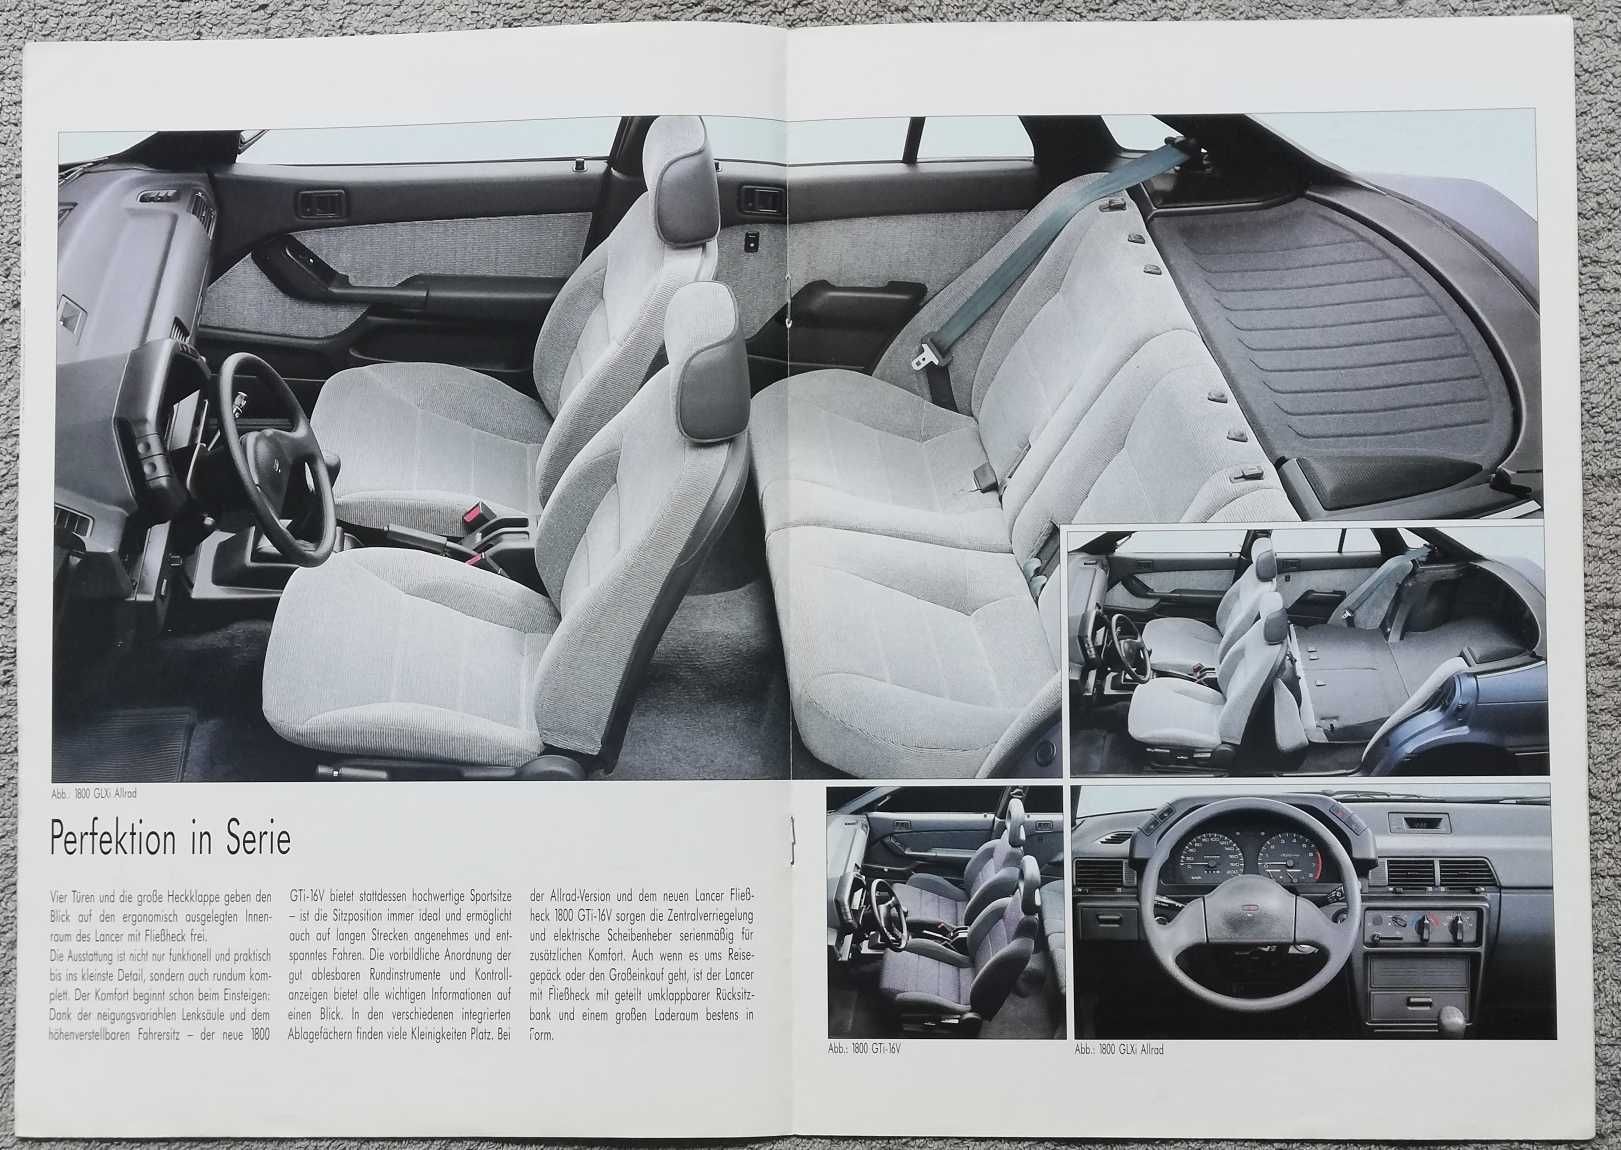 Prospekt Mitsubishi Lancer rok 1990